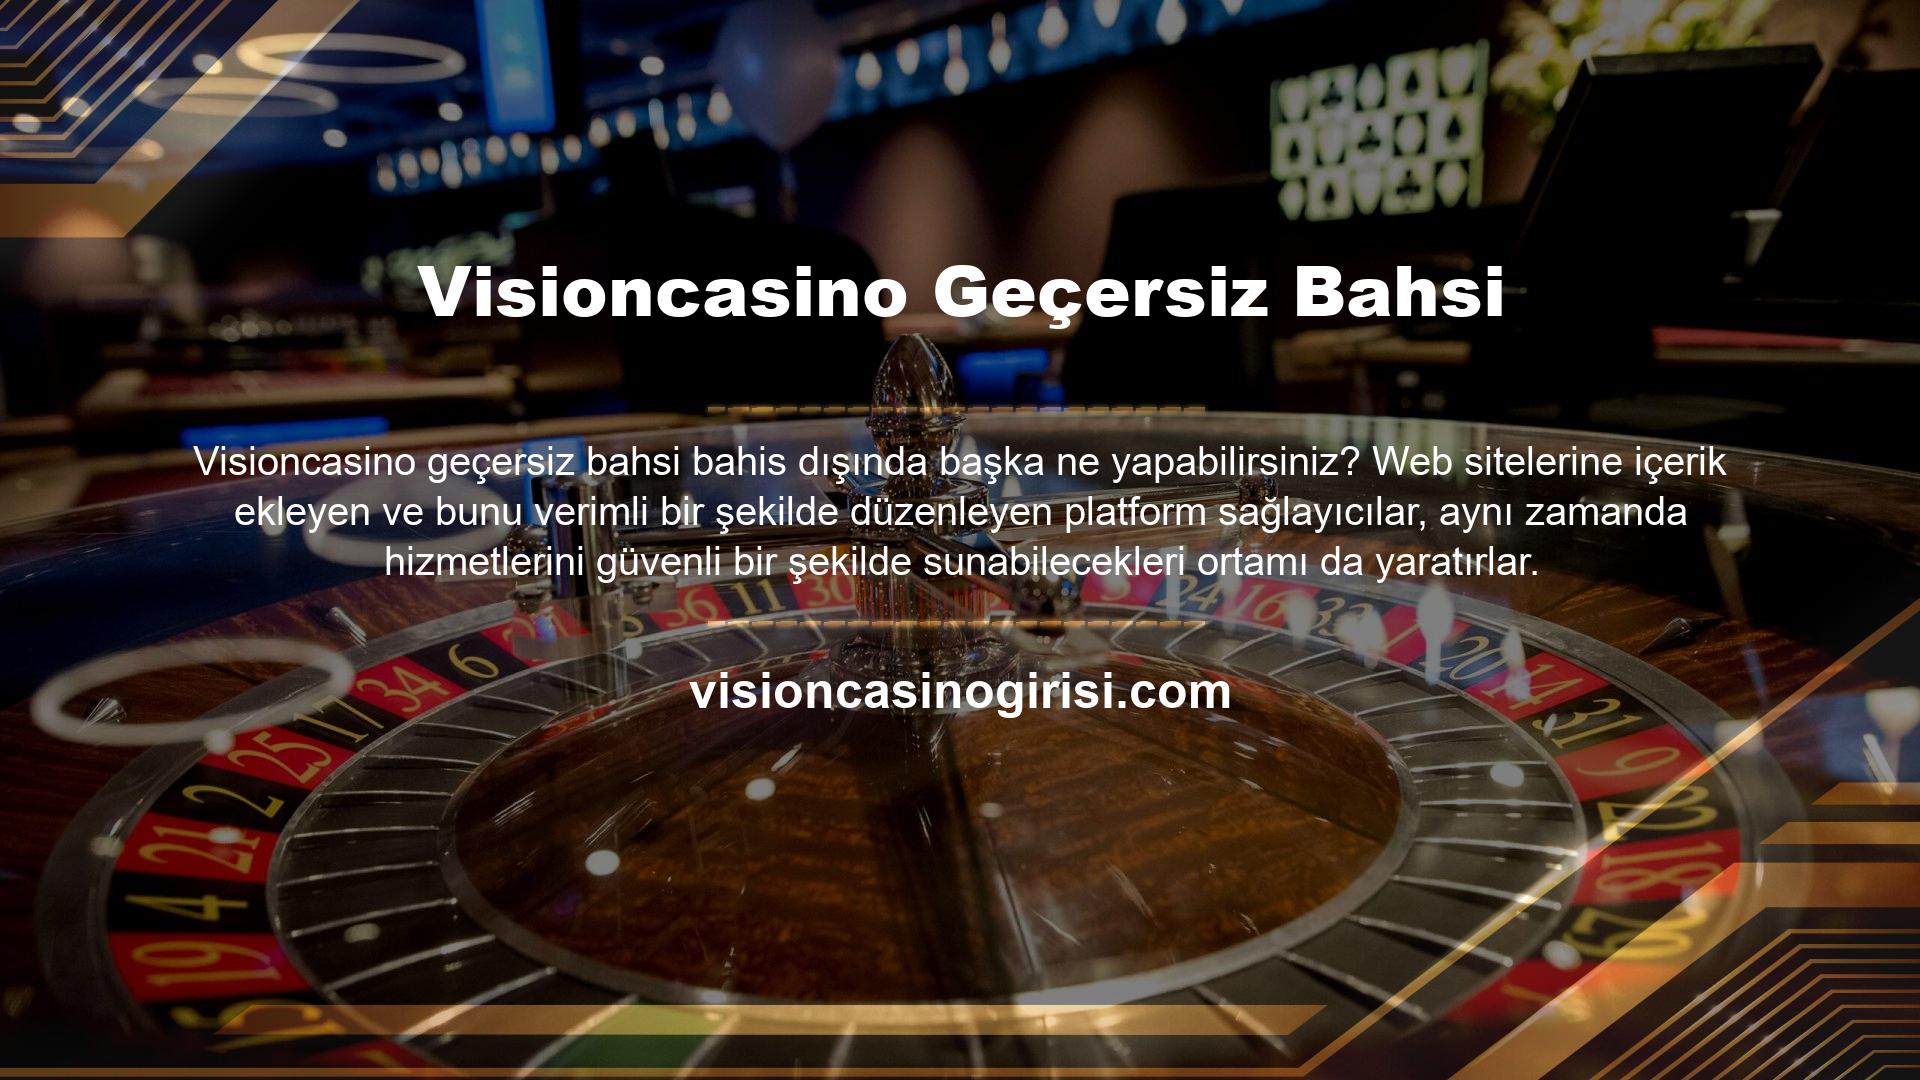 Eğer Visioncasino web sitesine bakarsanız, üyelere maddi kolaylık sağlamak amacıyla bir cep bankası seti içerdiklerini göreceksiniz